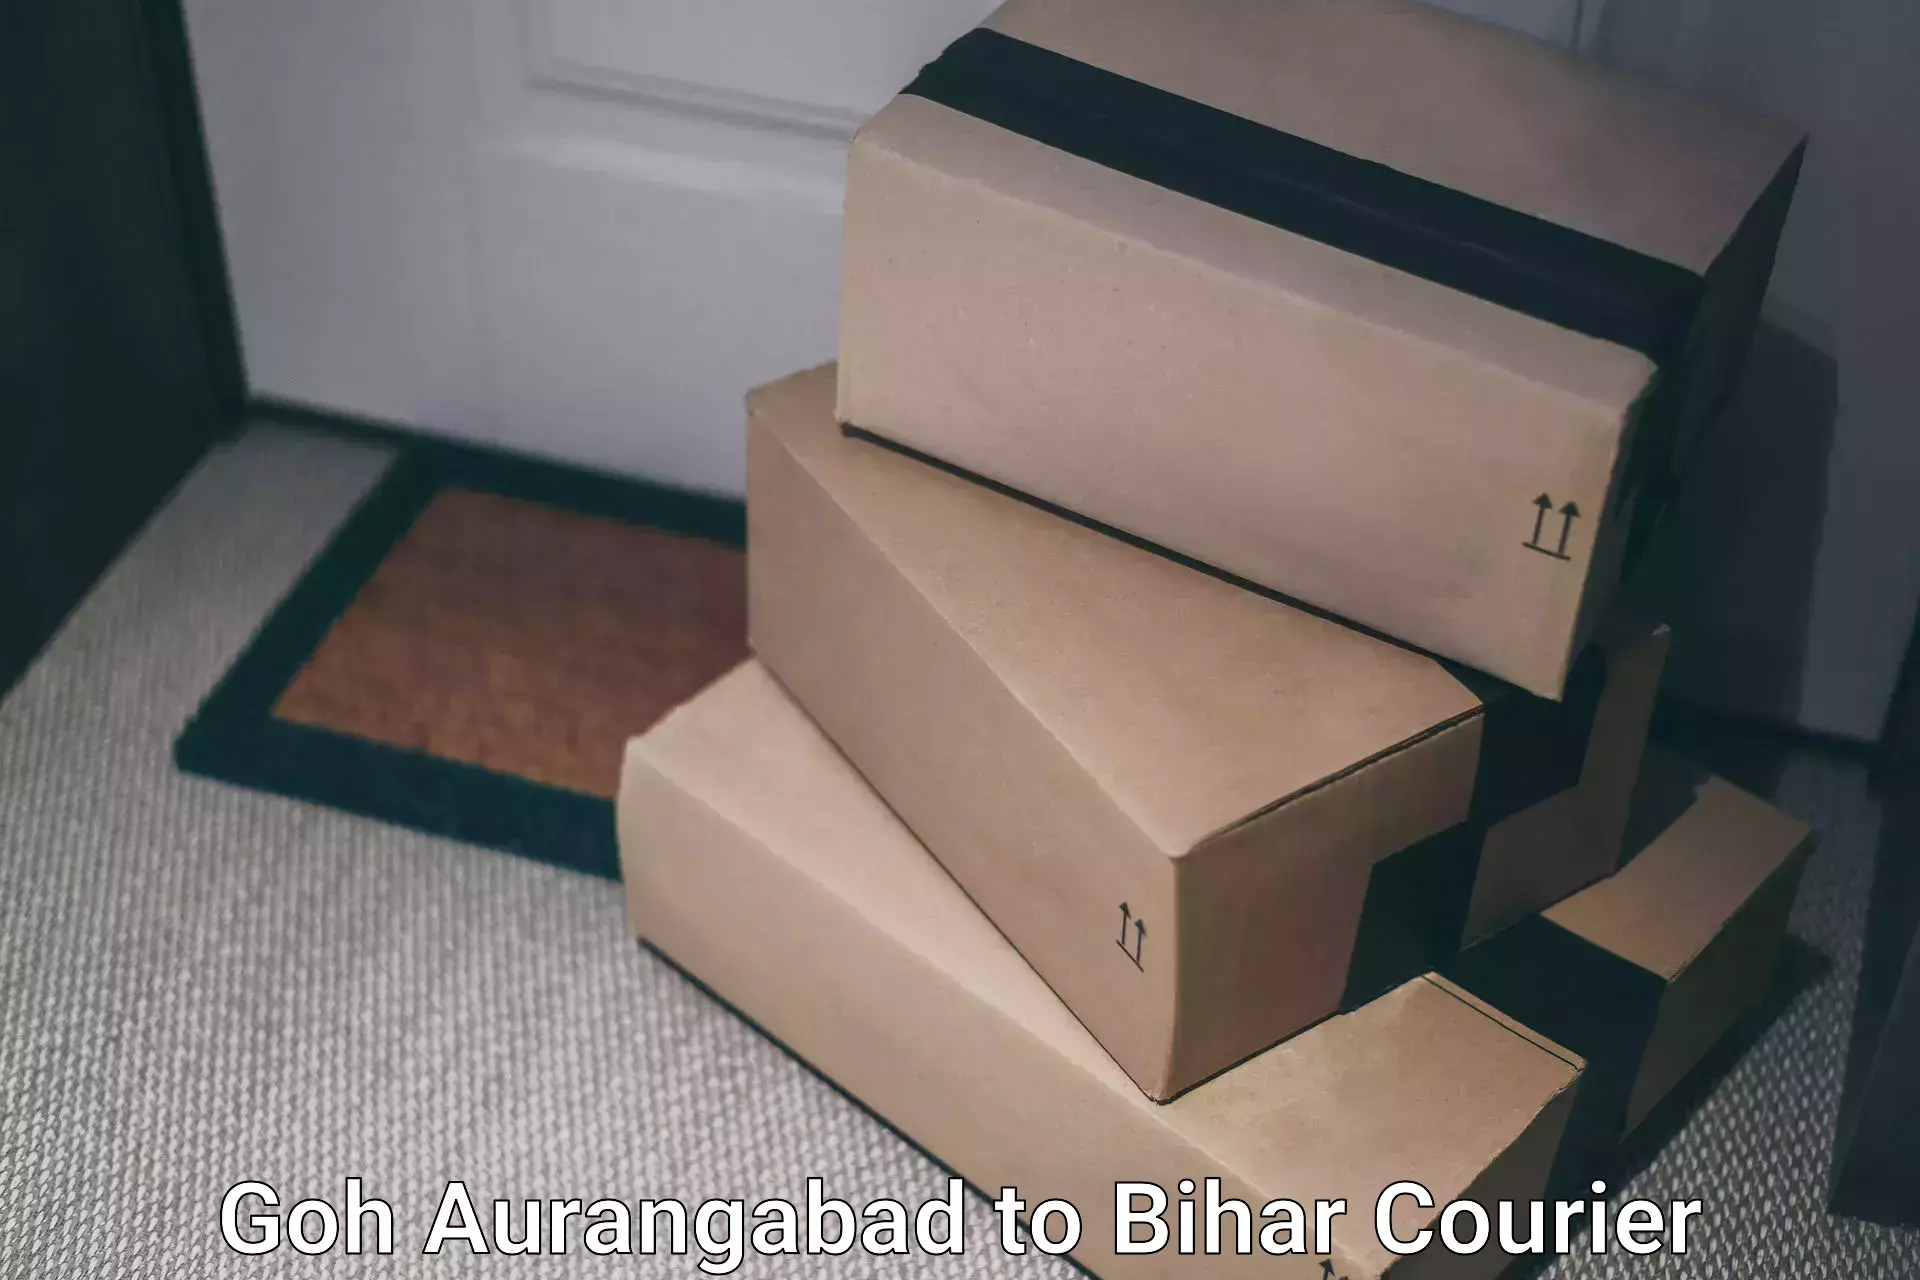 Premium courier solutions Goh Aurangabad to Banmankhi Bazar